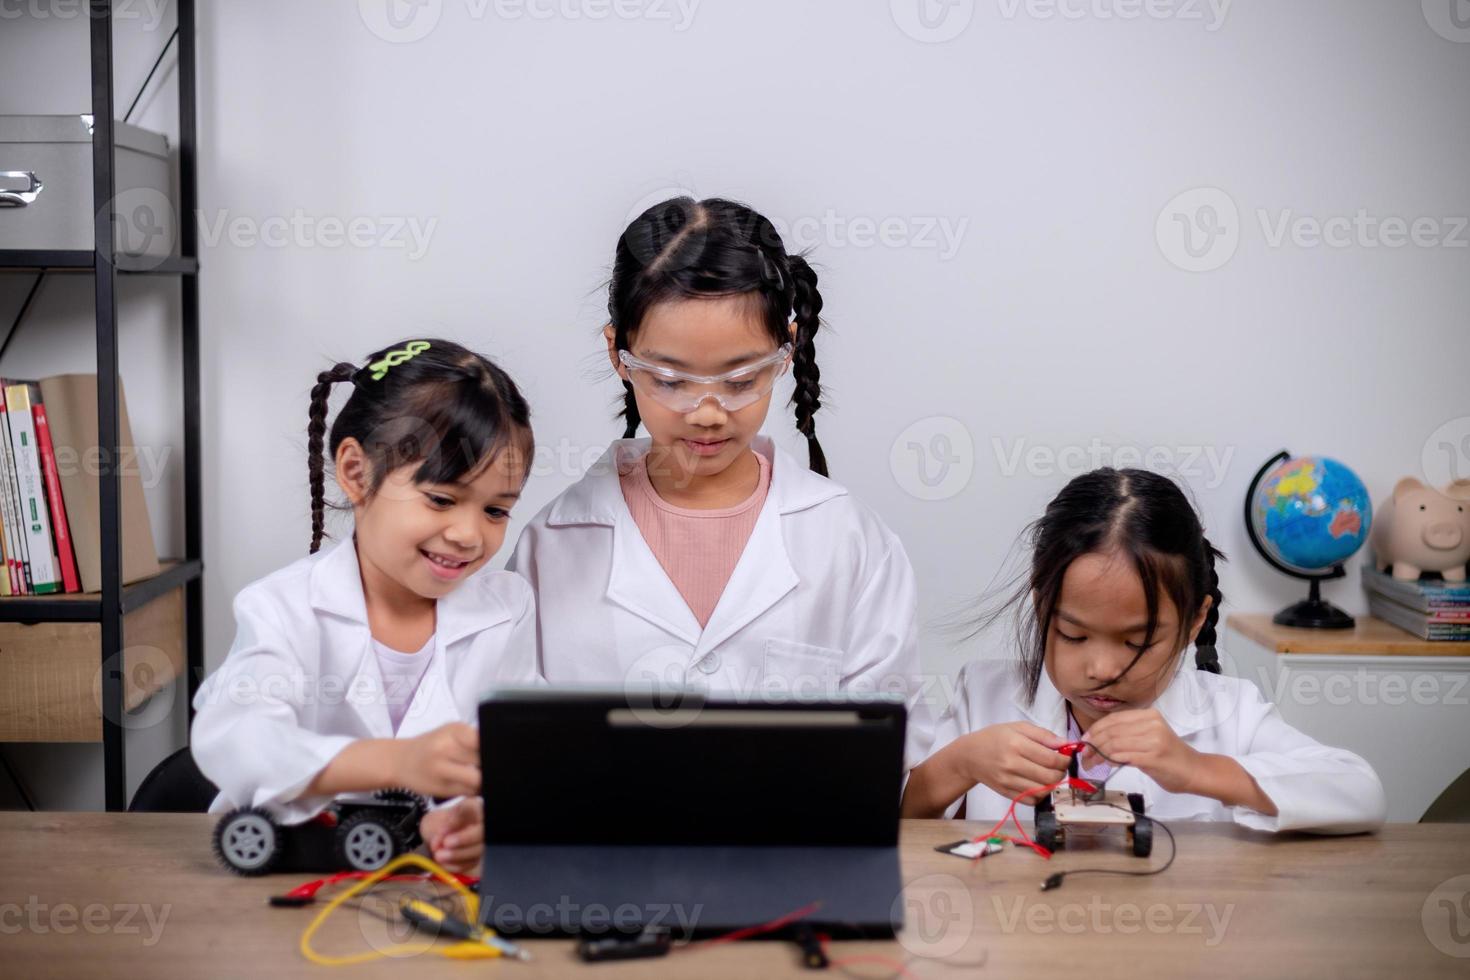 asiatisk studenter lära sig på Hem förbi kodning robot bilar och elektronisk styrelse kablar i stam, ånga, matematik teknik vetenskap teknologi dator koda i robotik för ungar' begrepp. foto